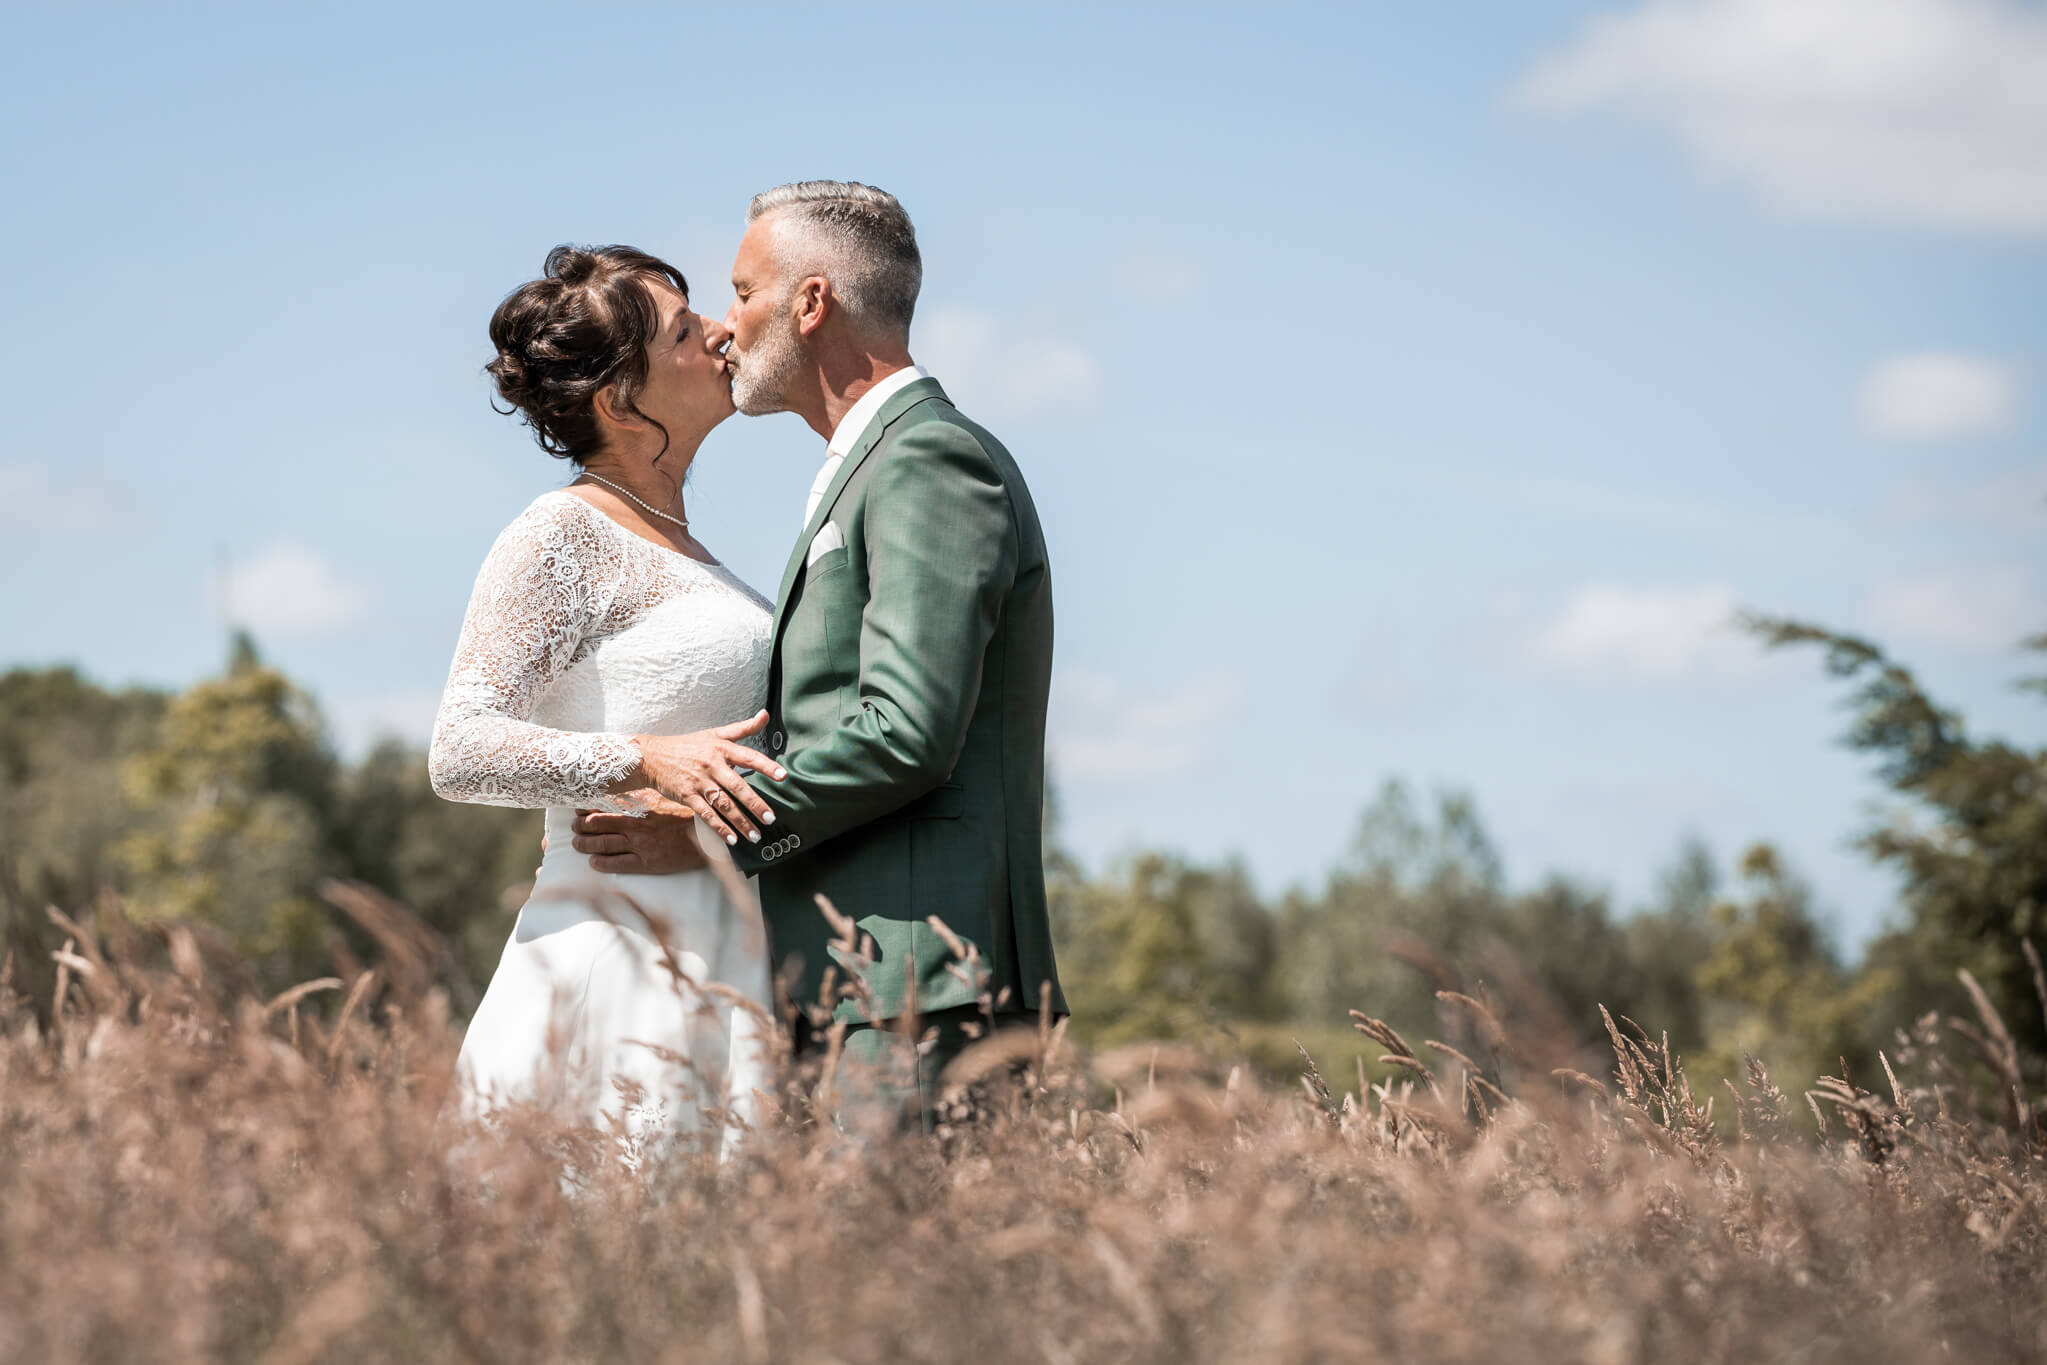 Bruidspaar kust elkaar in hoog grasland in mooie groene omgeving tijdens de fotoshoot op hun trouwdag.